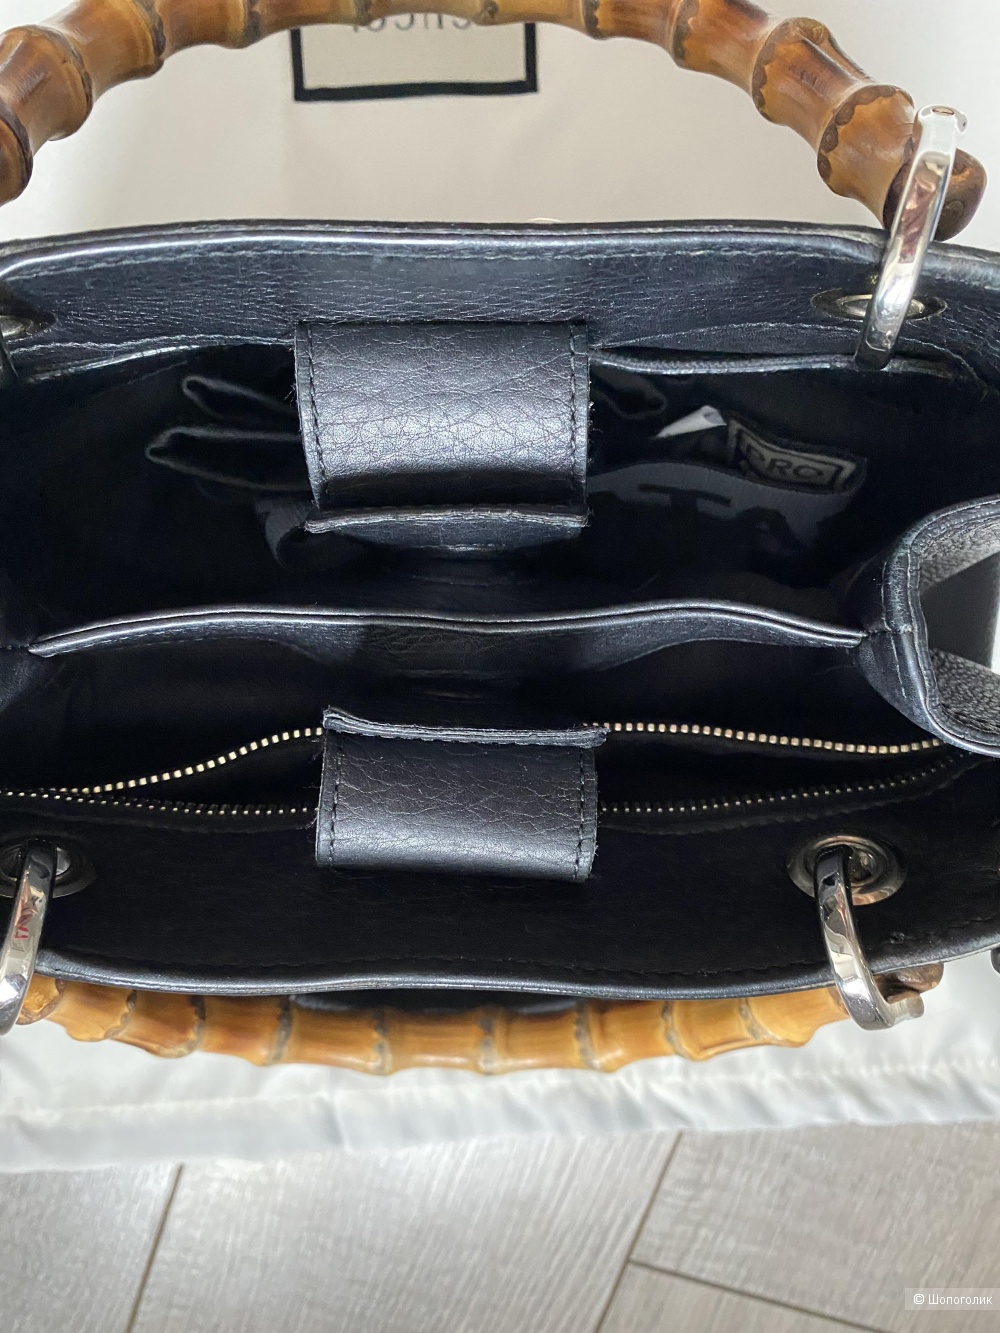 Сумка Gucci shopper leather mini bag